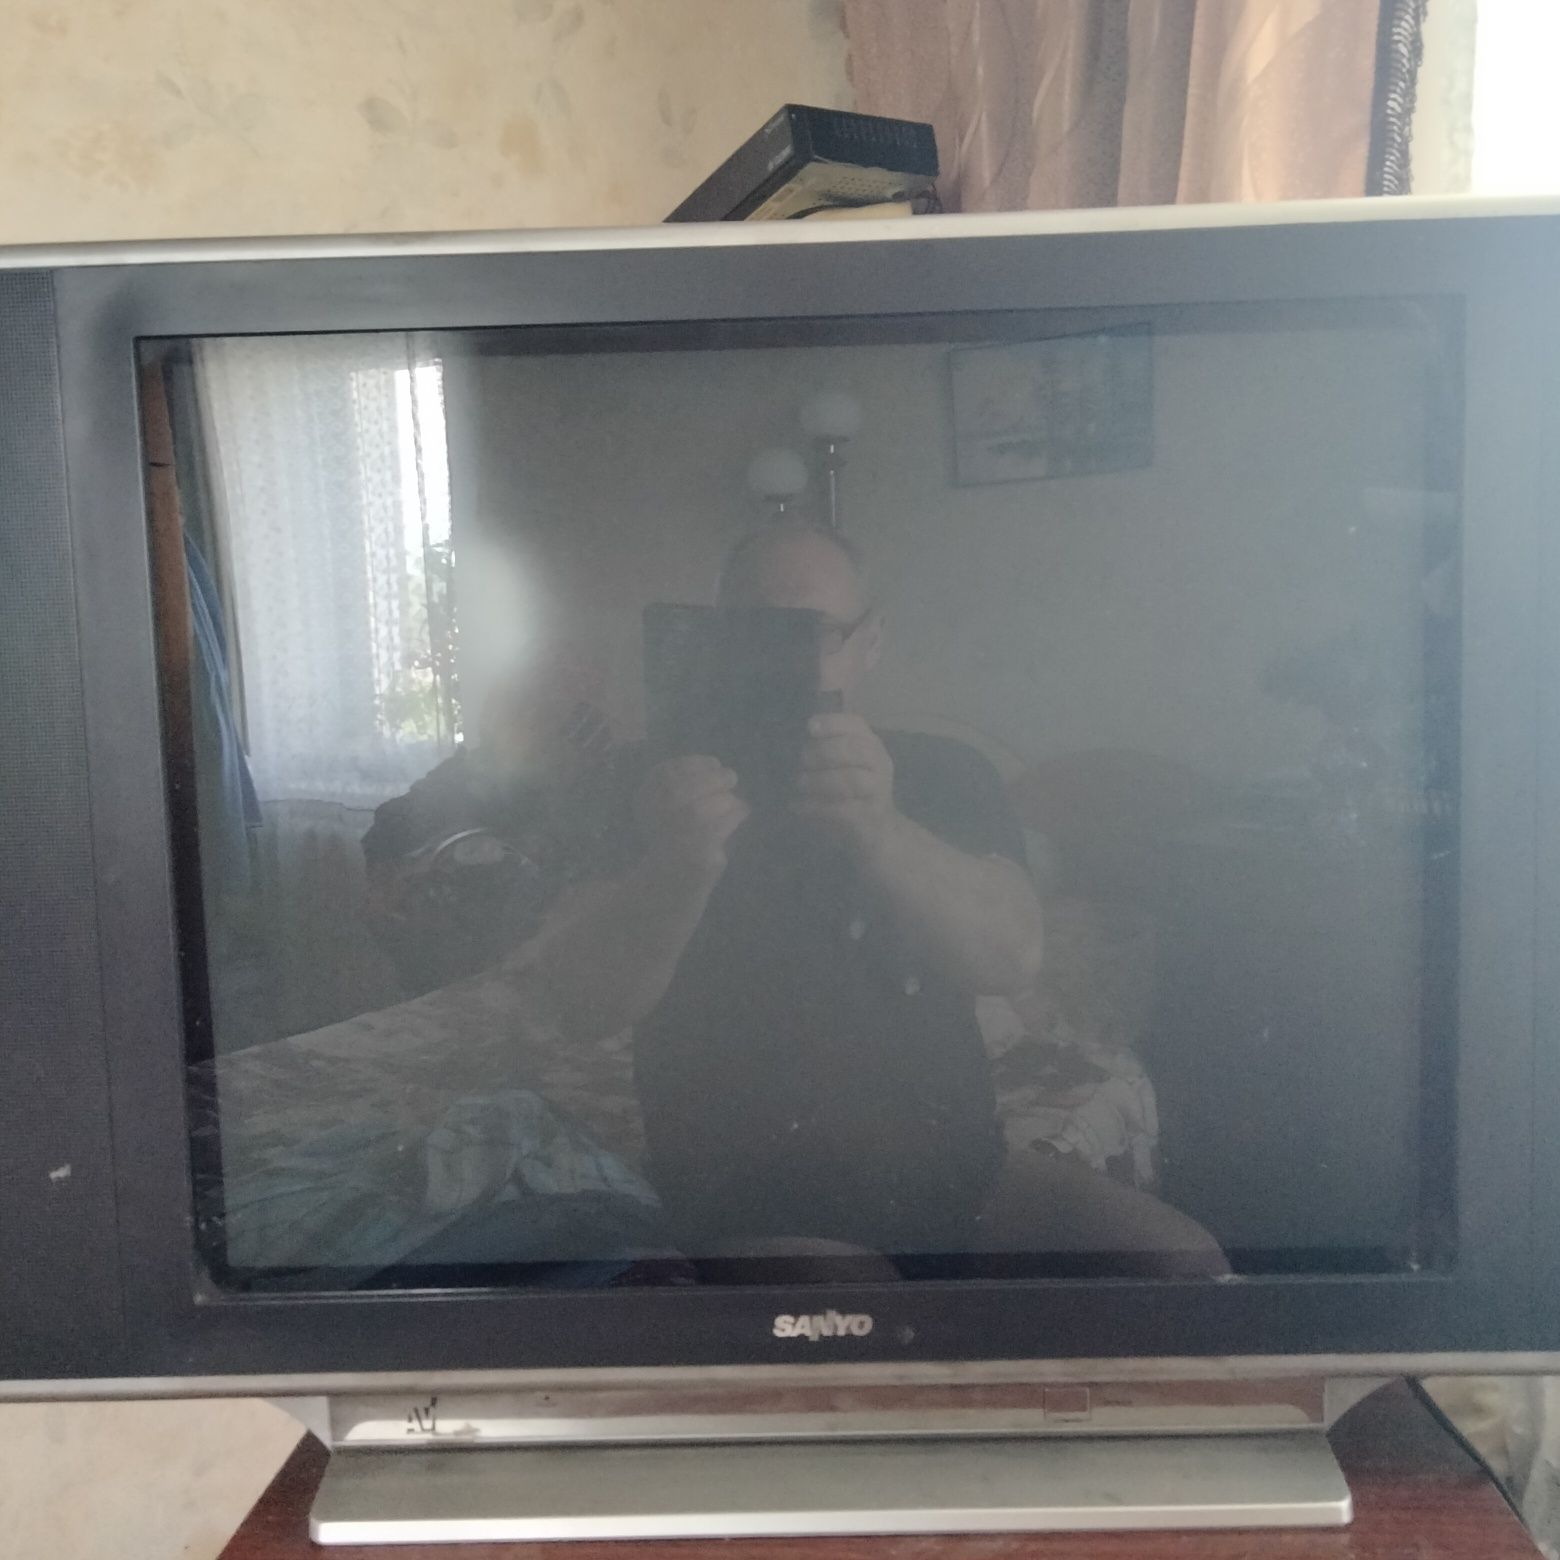 SLIM Телевізор SАNYO СМ29FS1 під ремонт або на запчастини